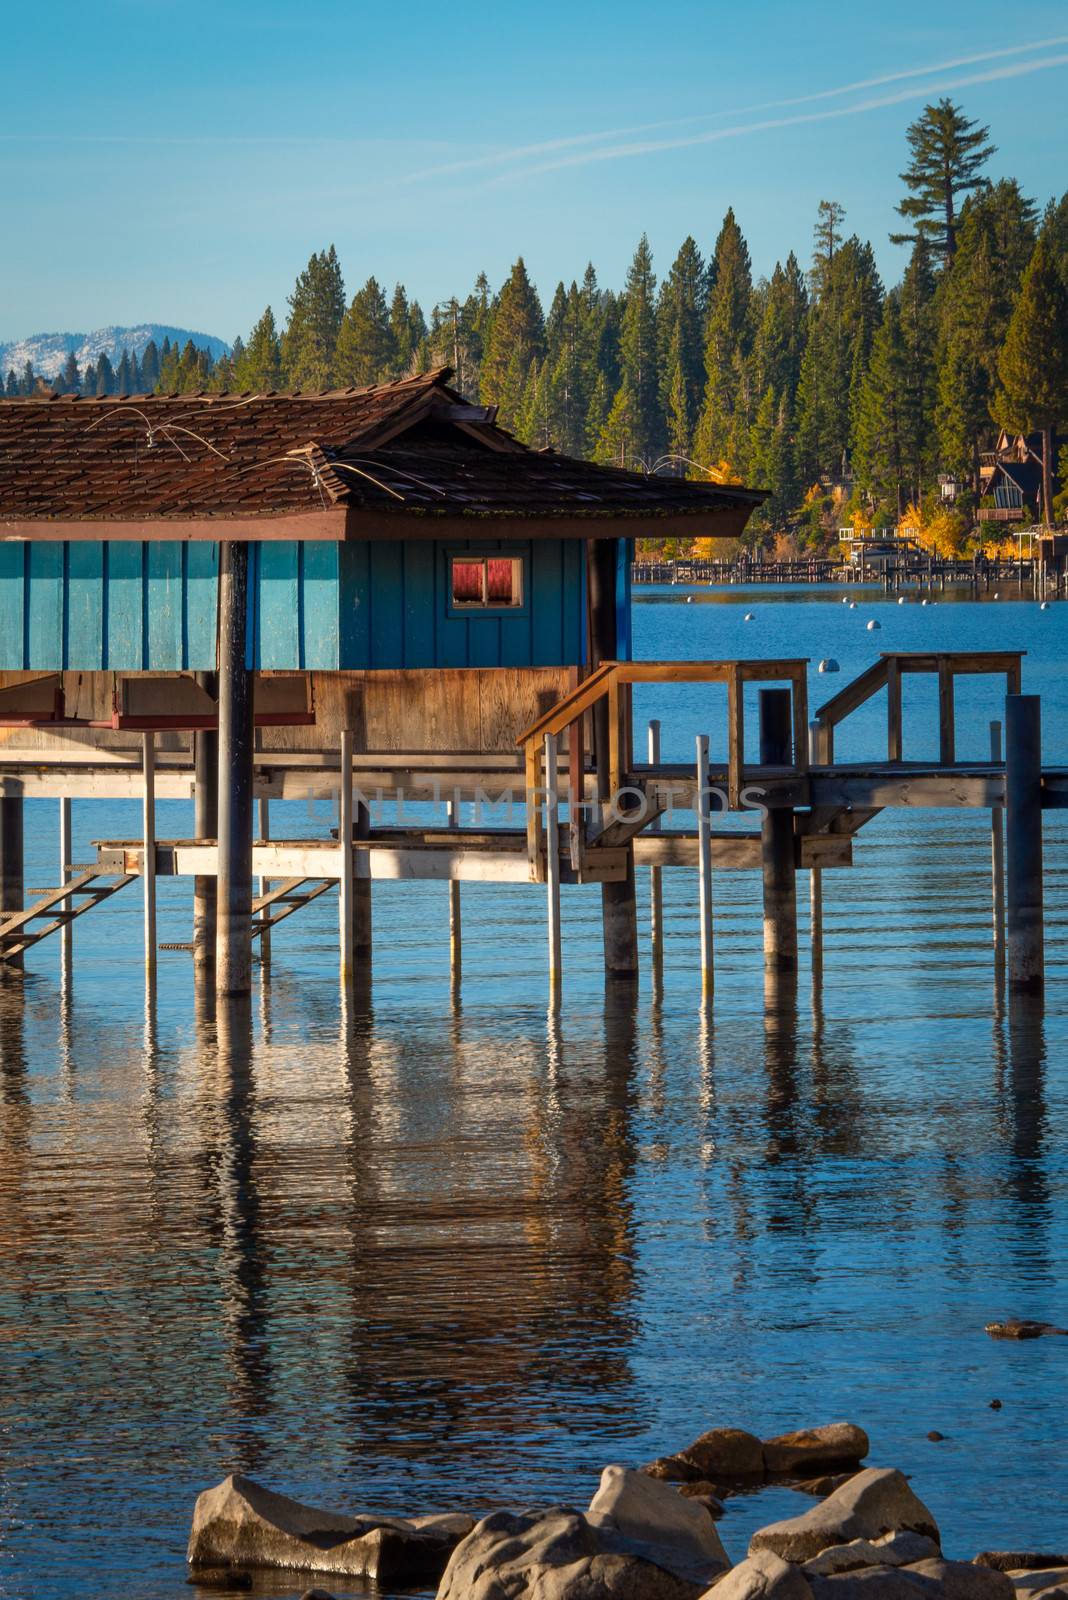 Stilt hut in a lake by CelsoDiniz